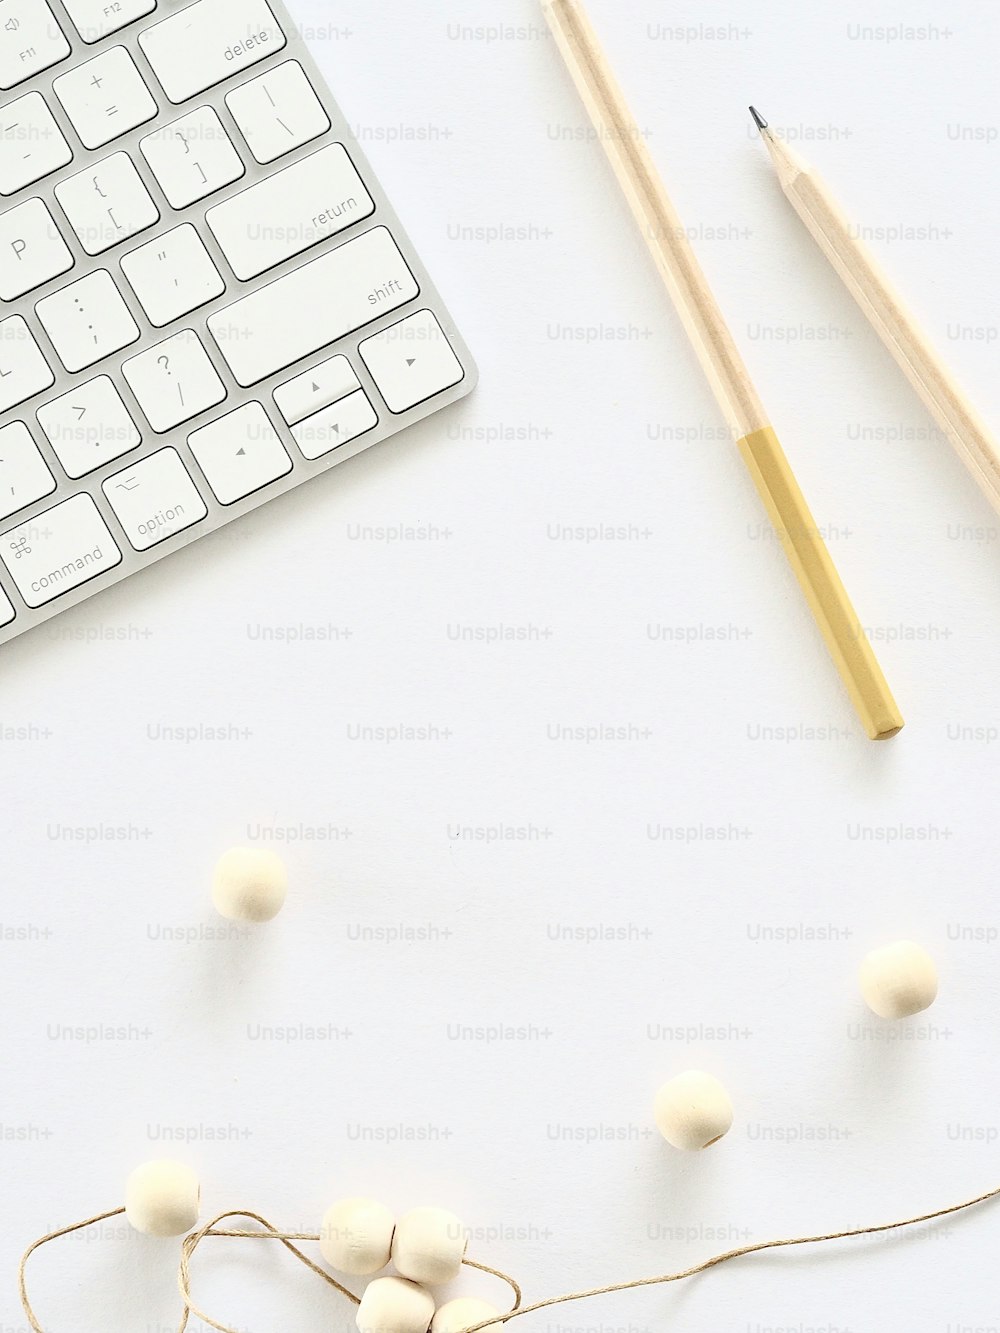 un teclado, lápices y bolas de hilo sobre una superficie blanca